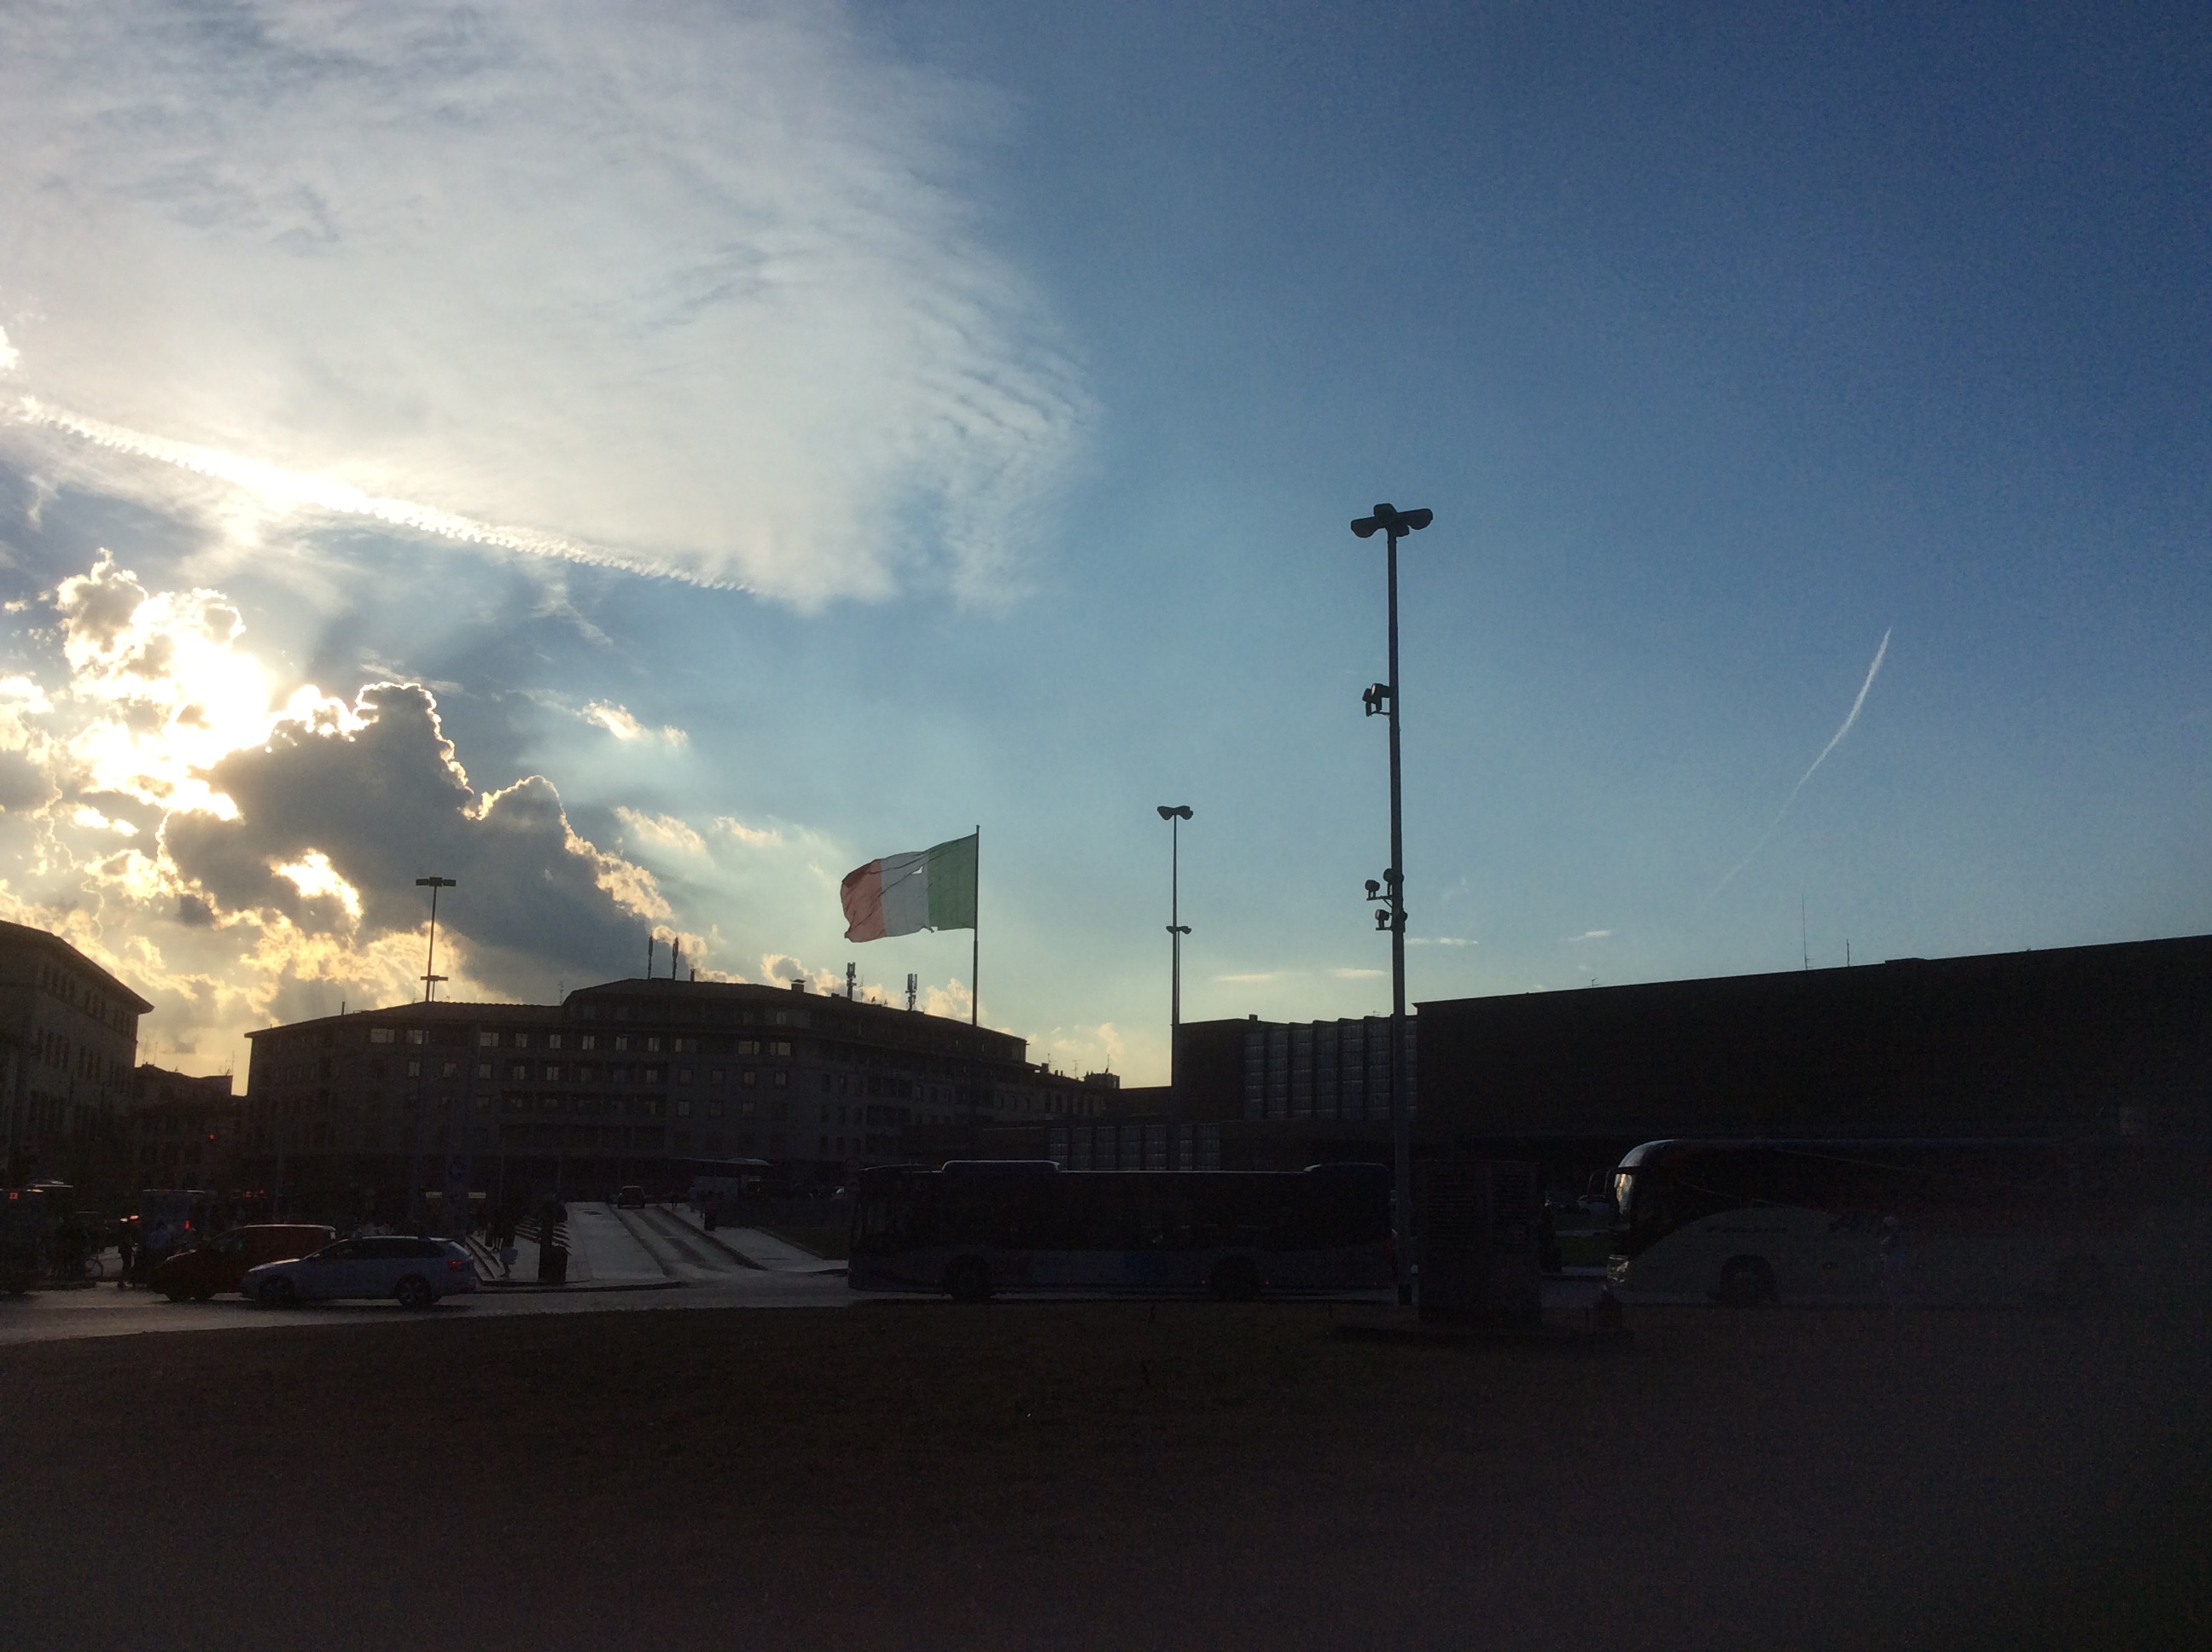 Bandiera italiana bucata in piazza stazione